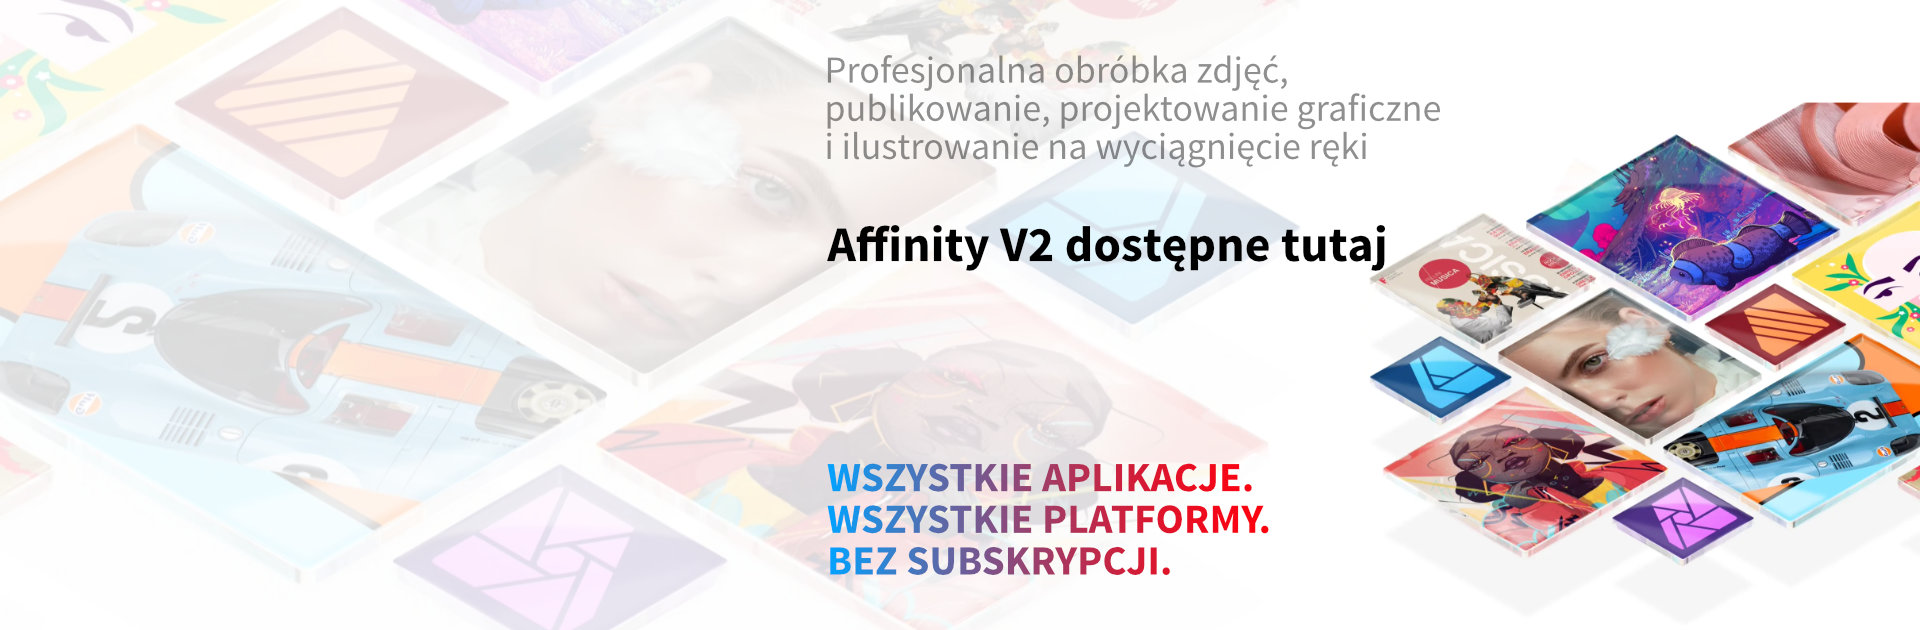 Affinity v2